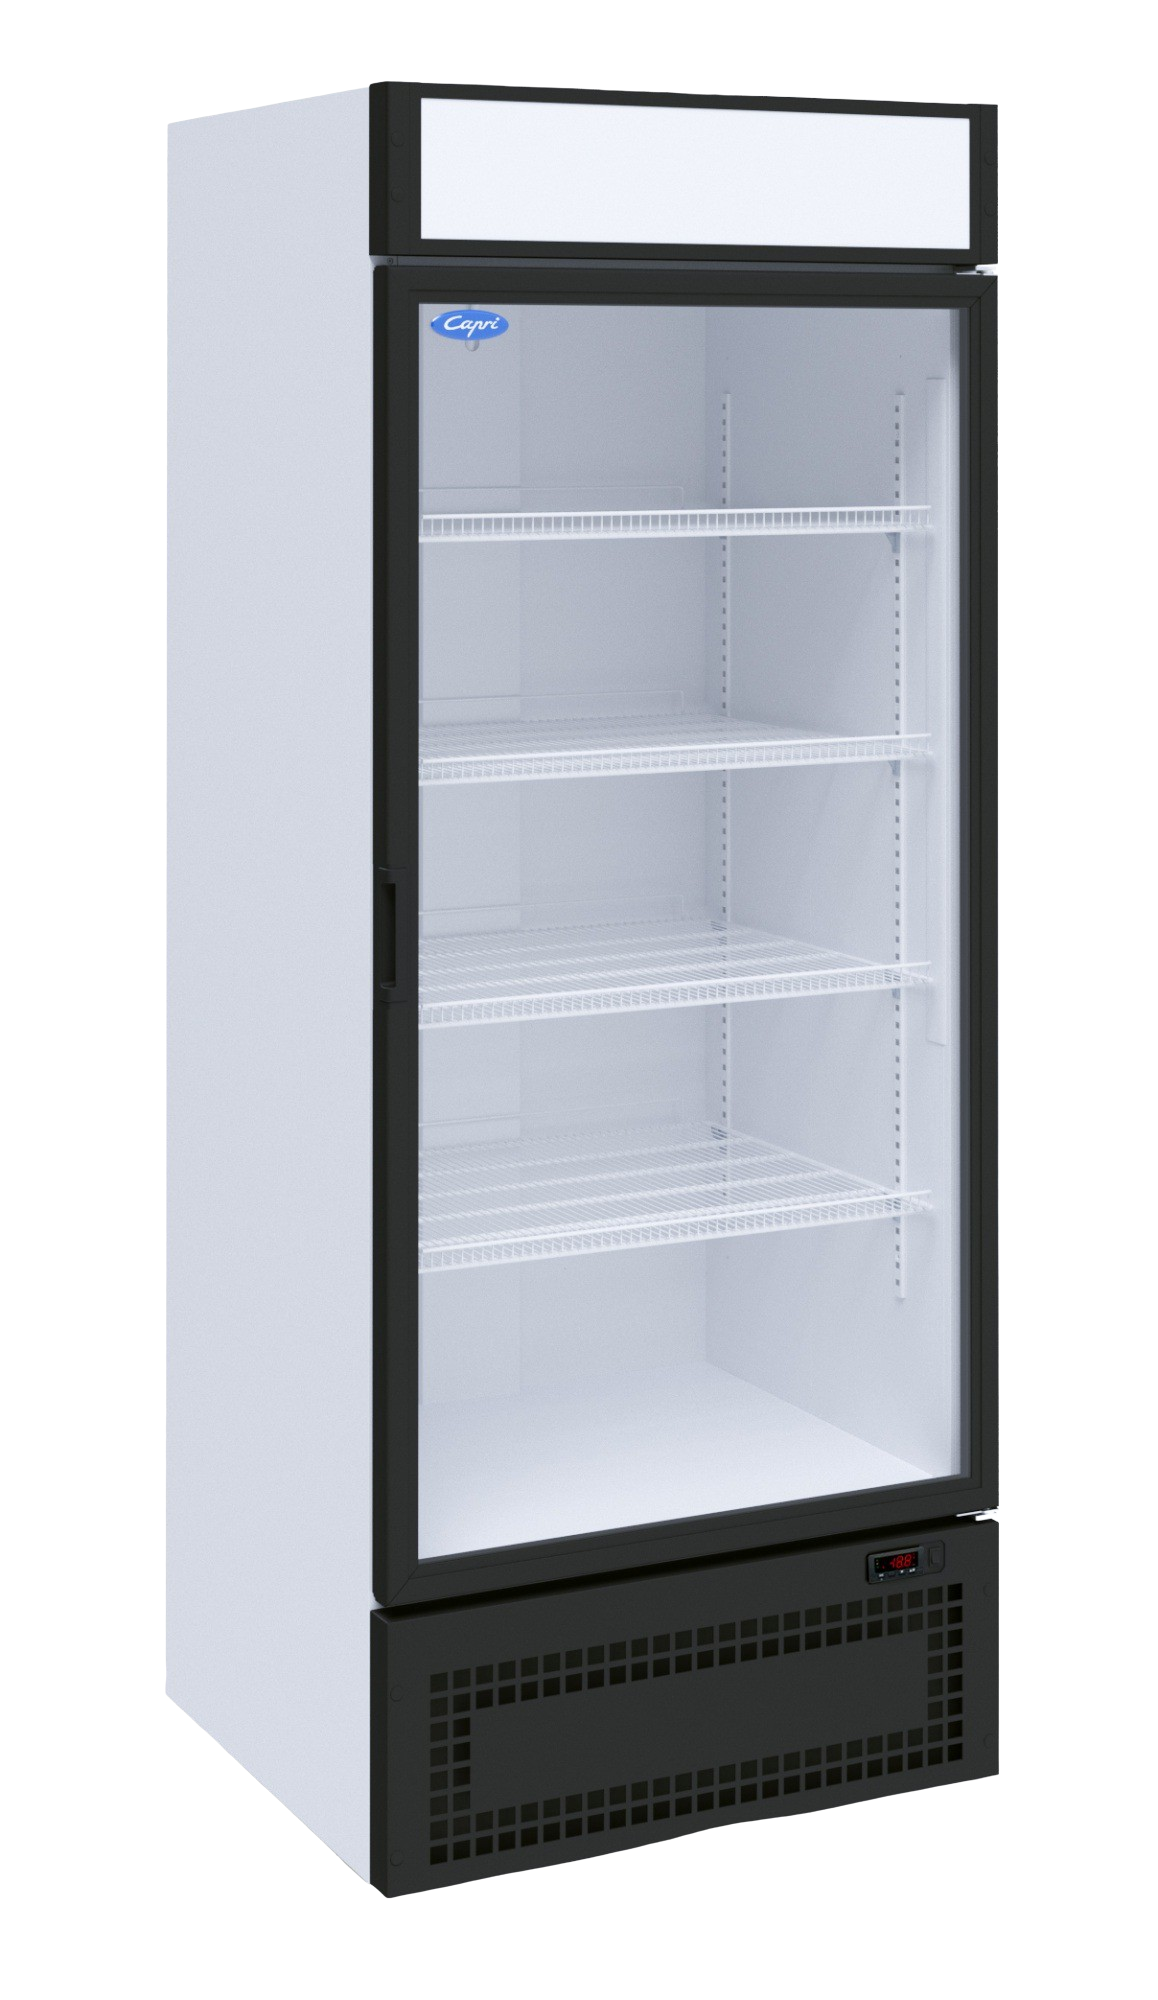 Холодильный шкаф МХМ Капри 0,7УСК